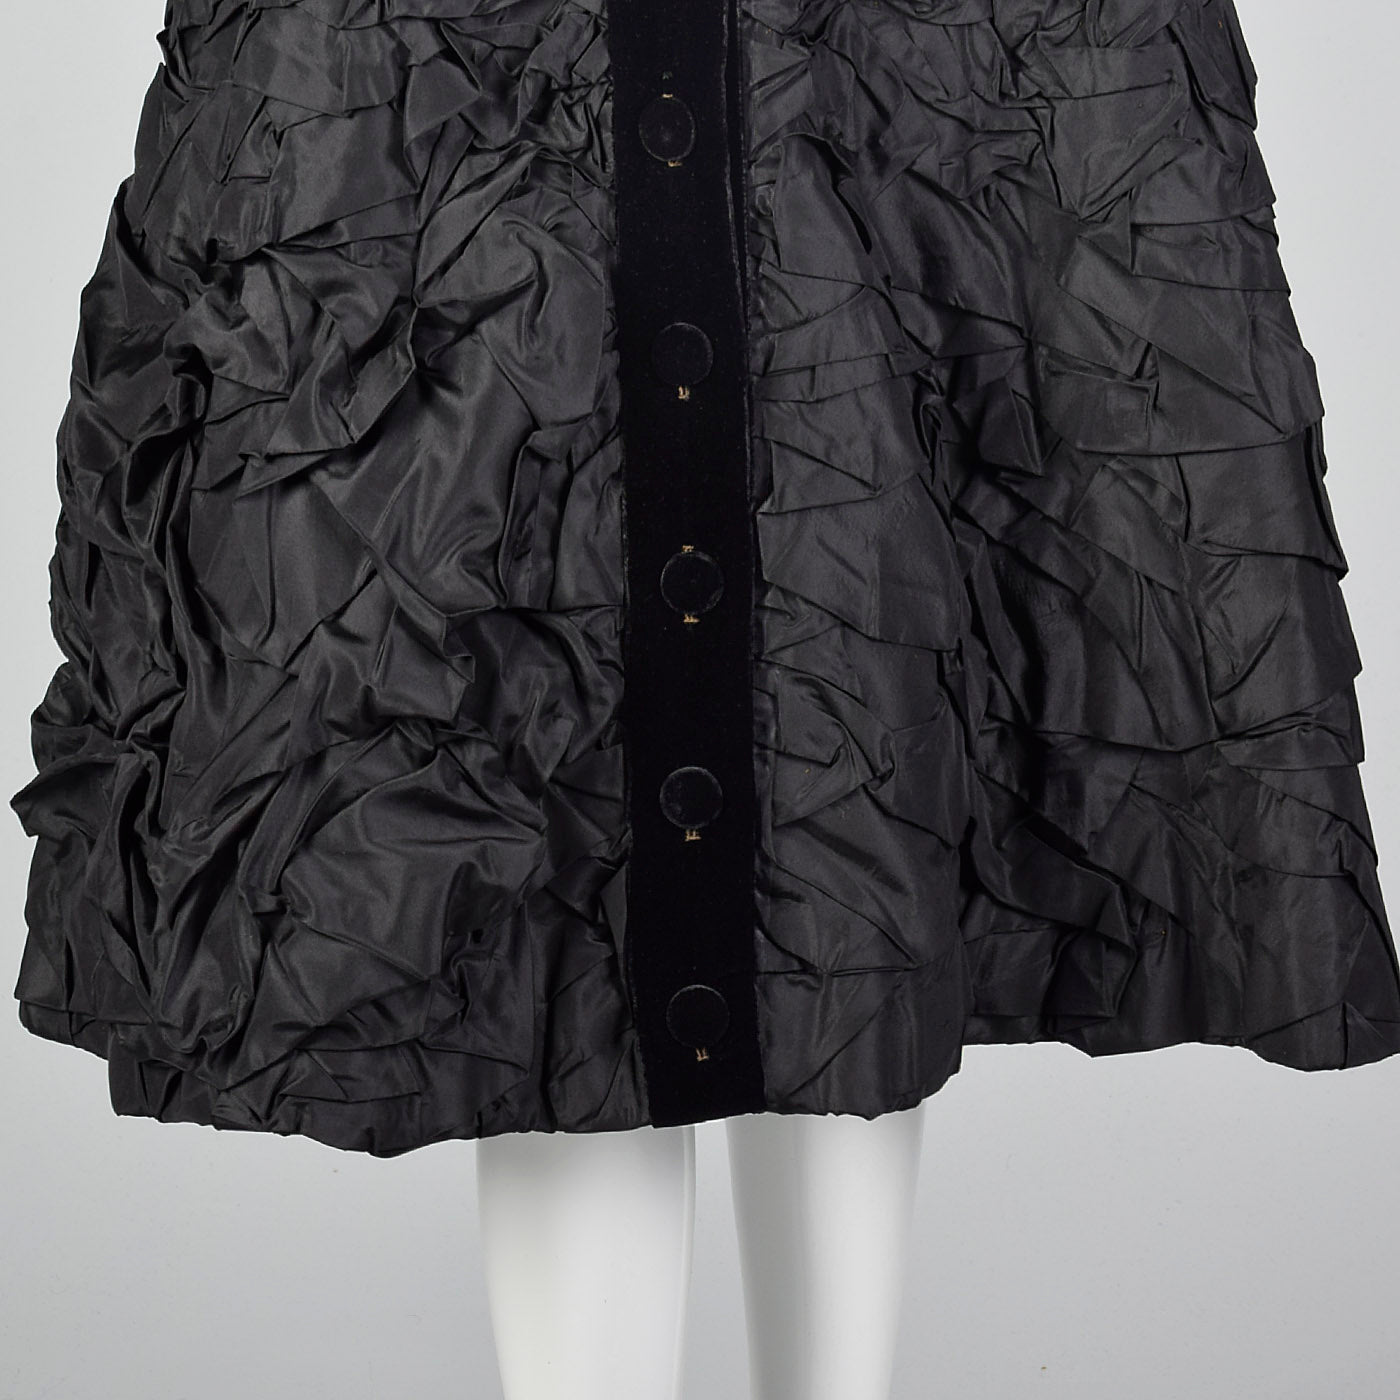 1950s Black Velvet Dress with Textured Skirt